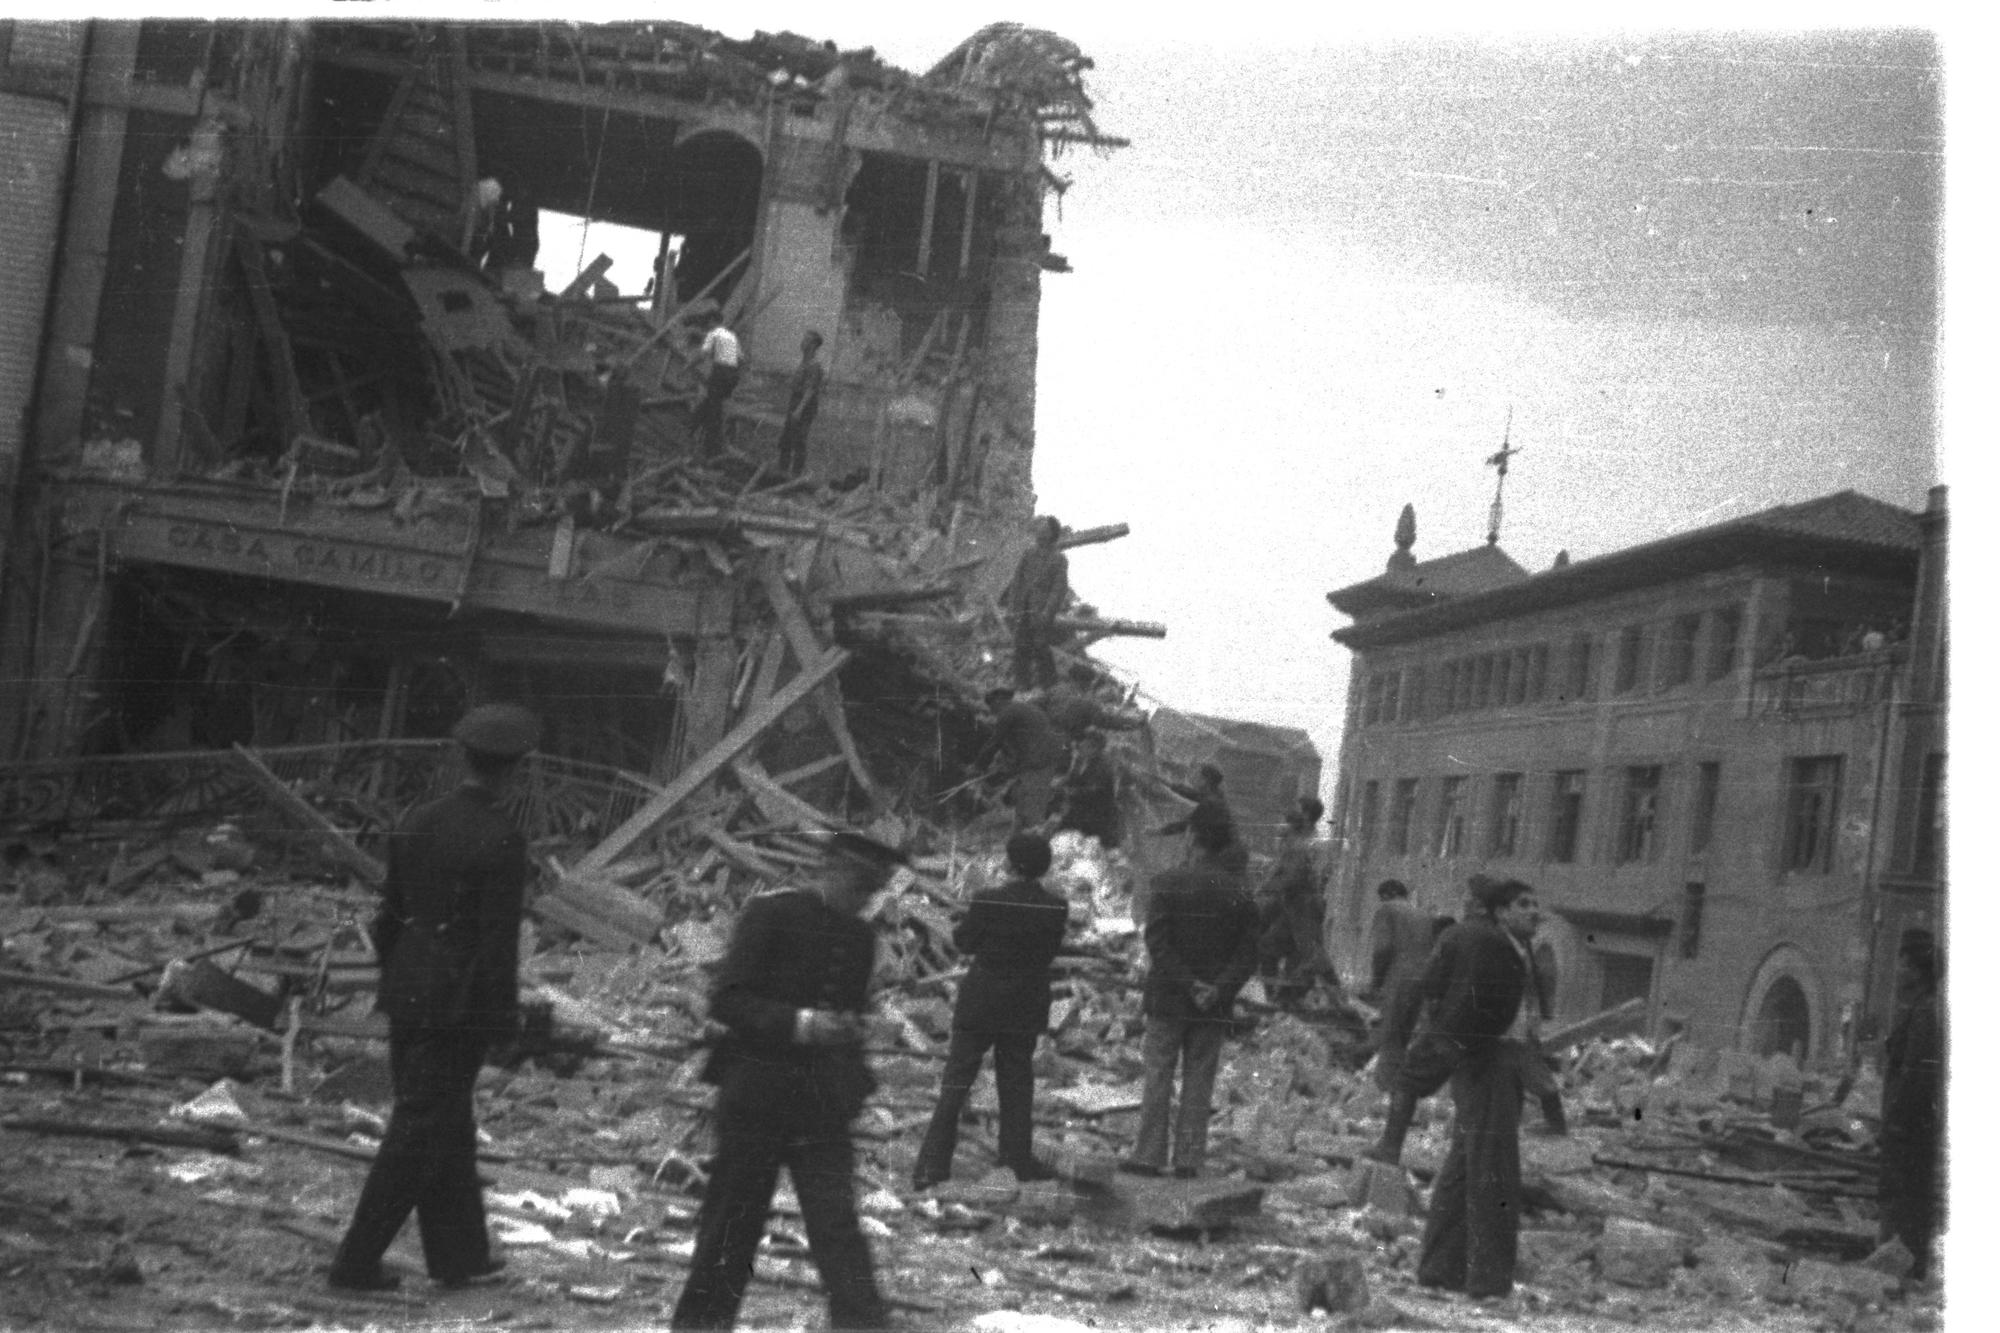 Gijón bombaredeado